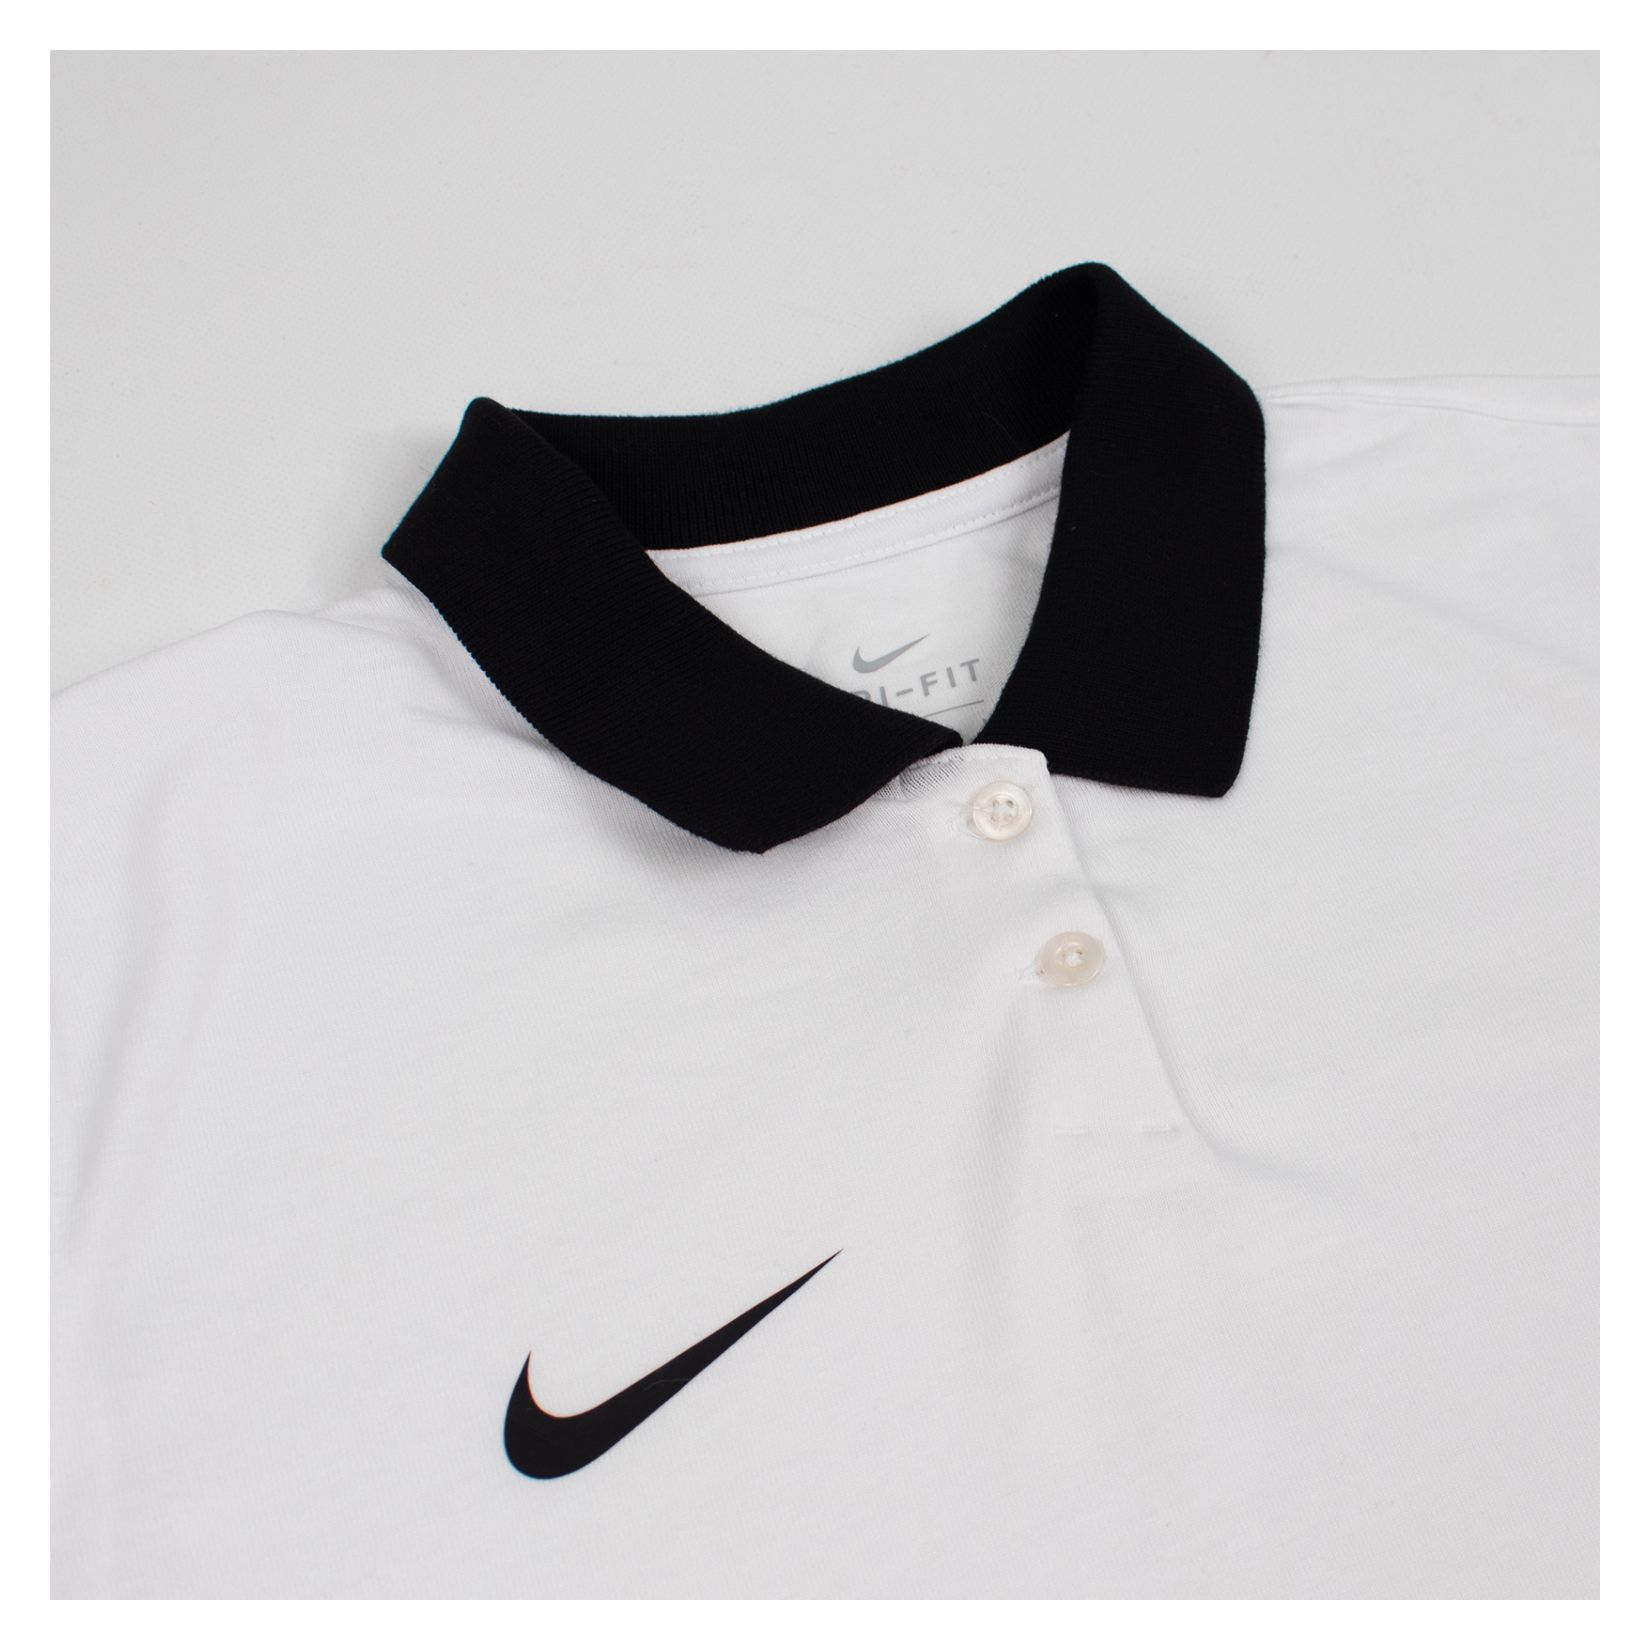 Nike Womens Dri-FIT Park Poly Cotton Polo (W)